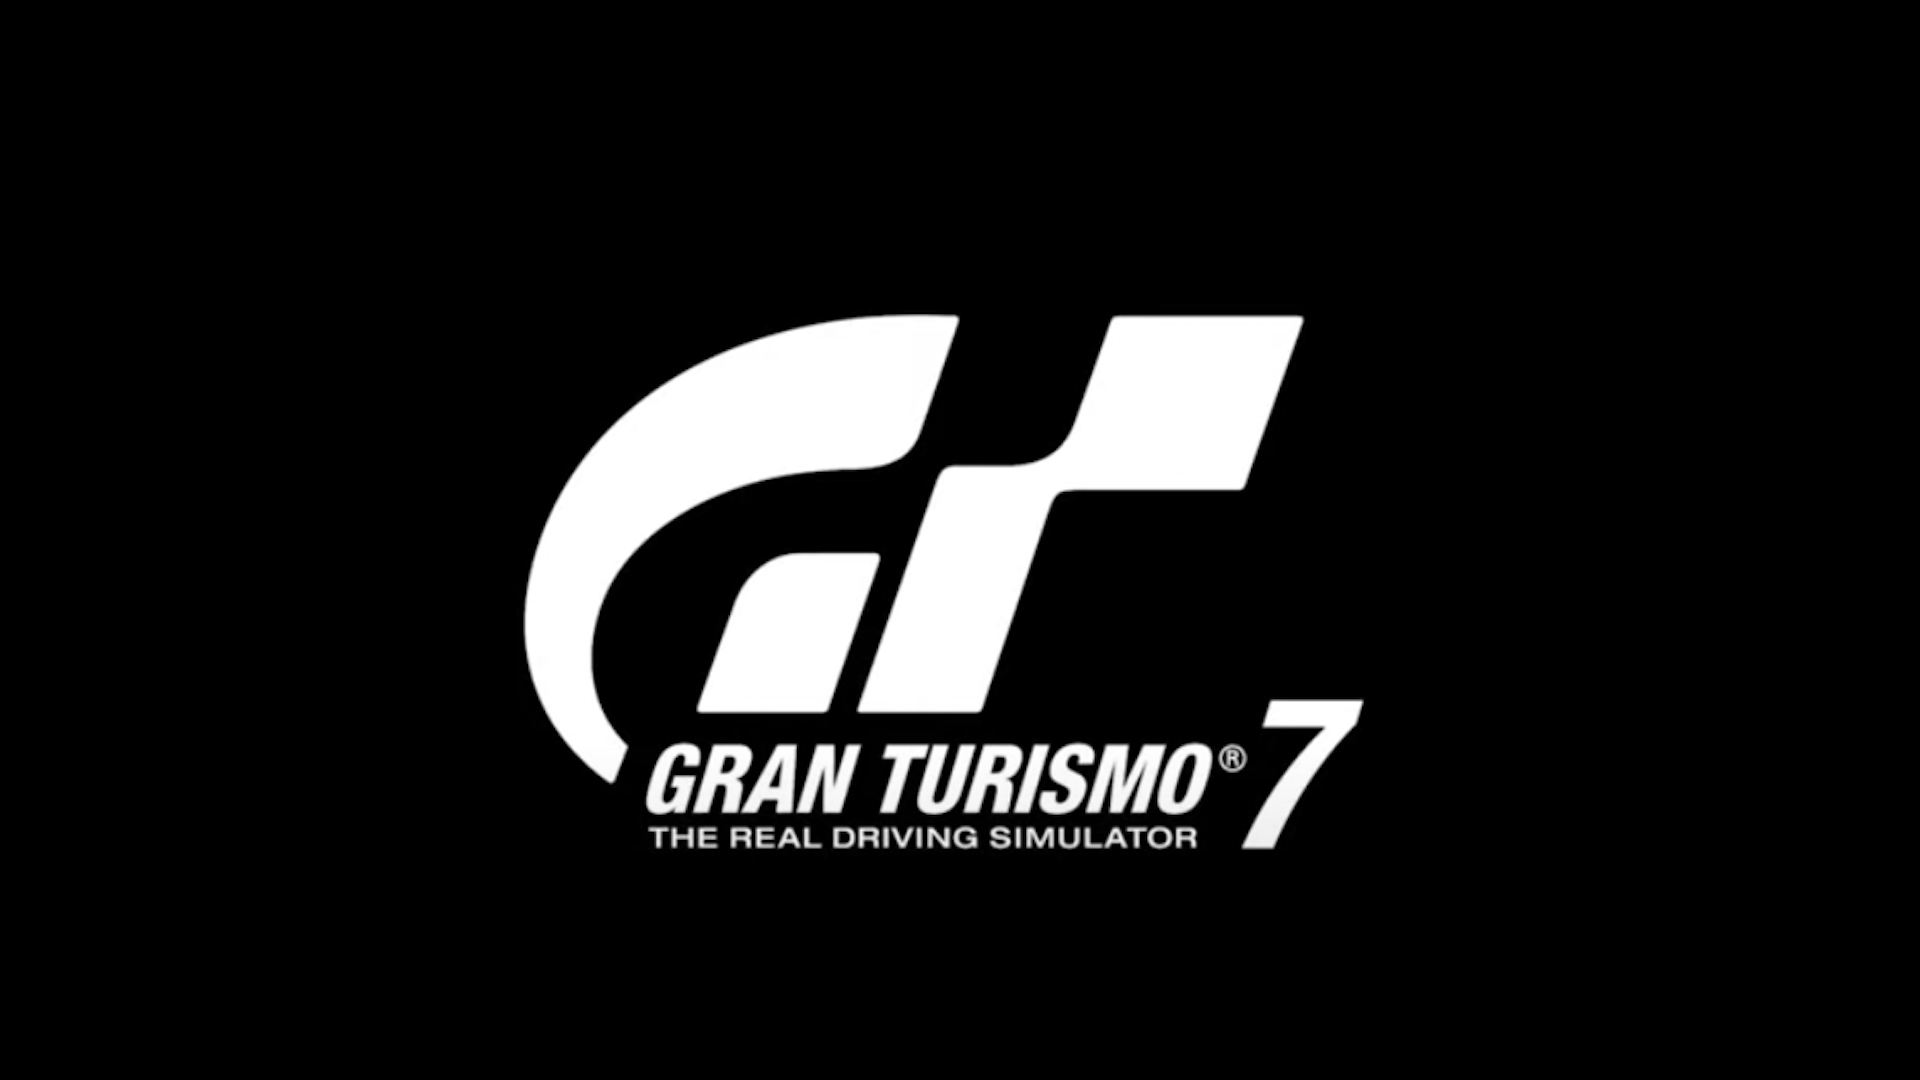 Gran Turismo 7 Dev dumanda chì vittura duverebbe esse nantu à a copertina